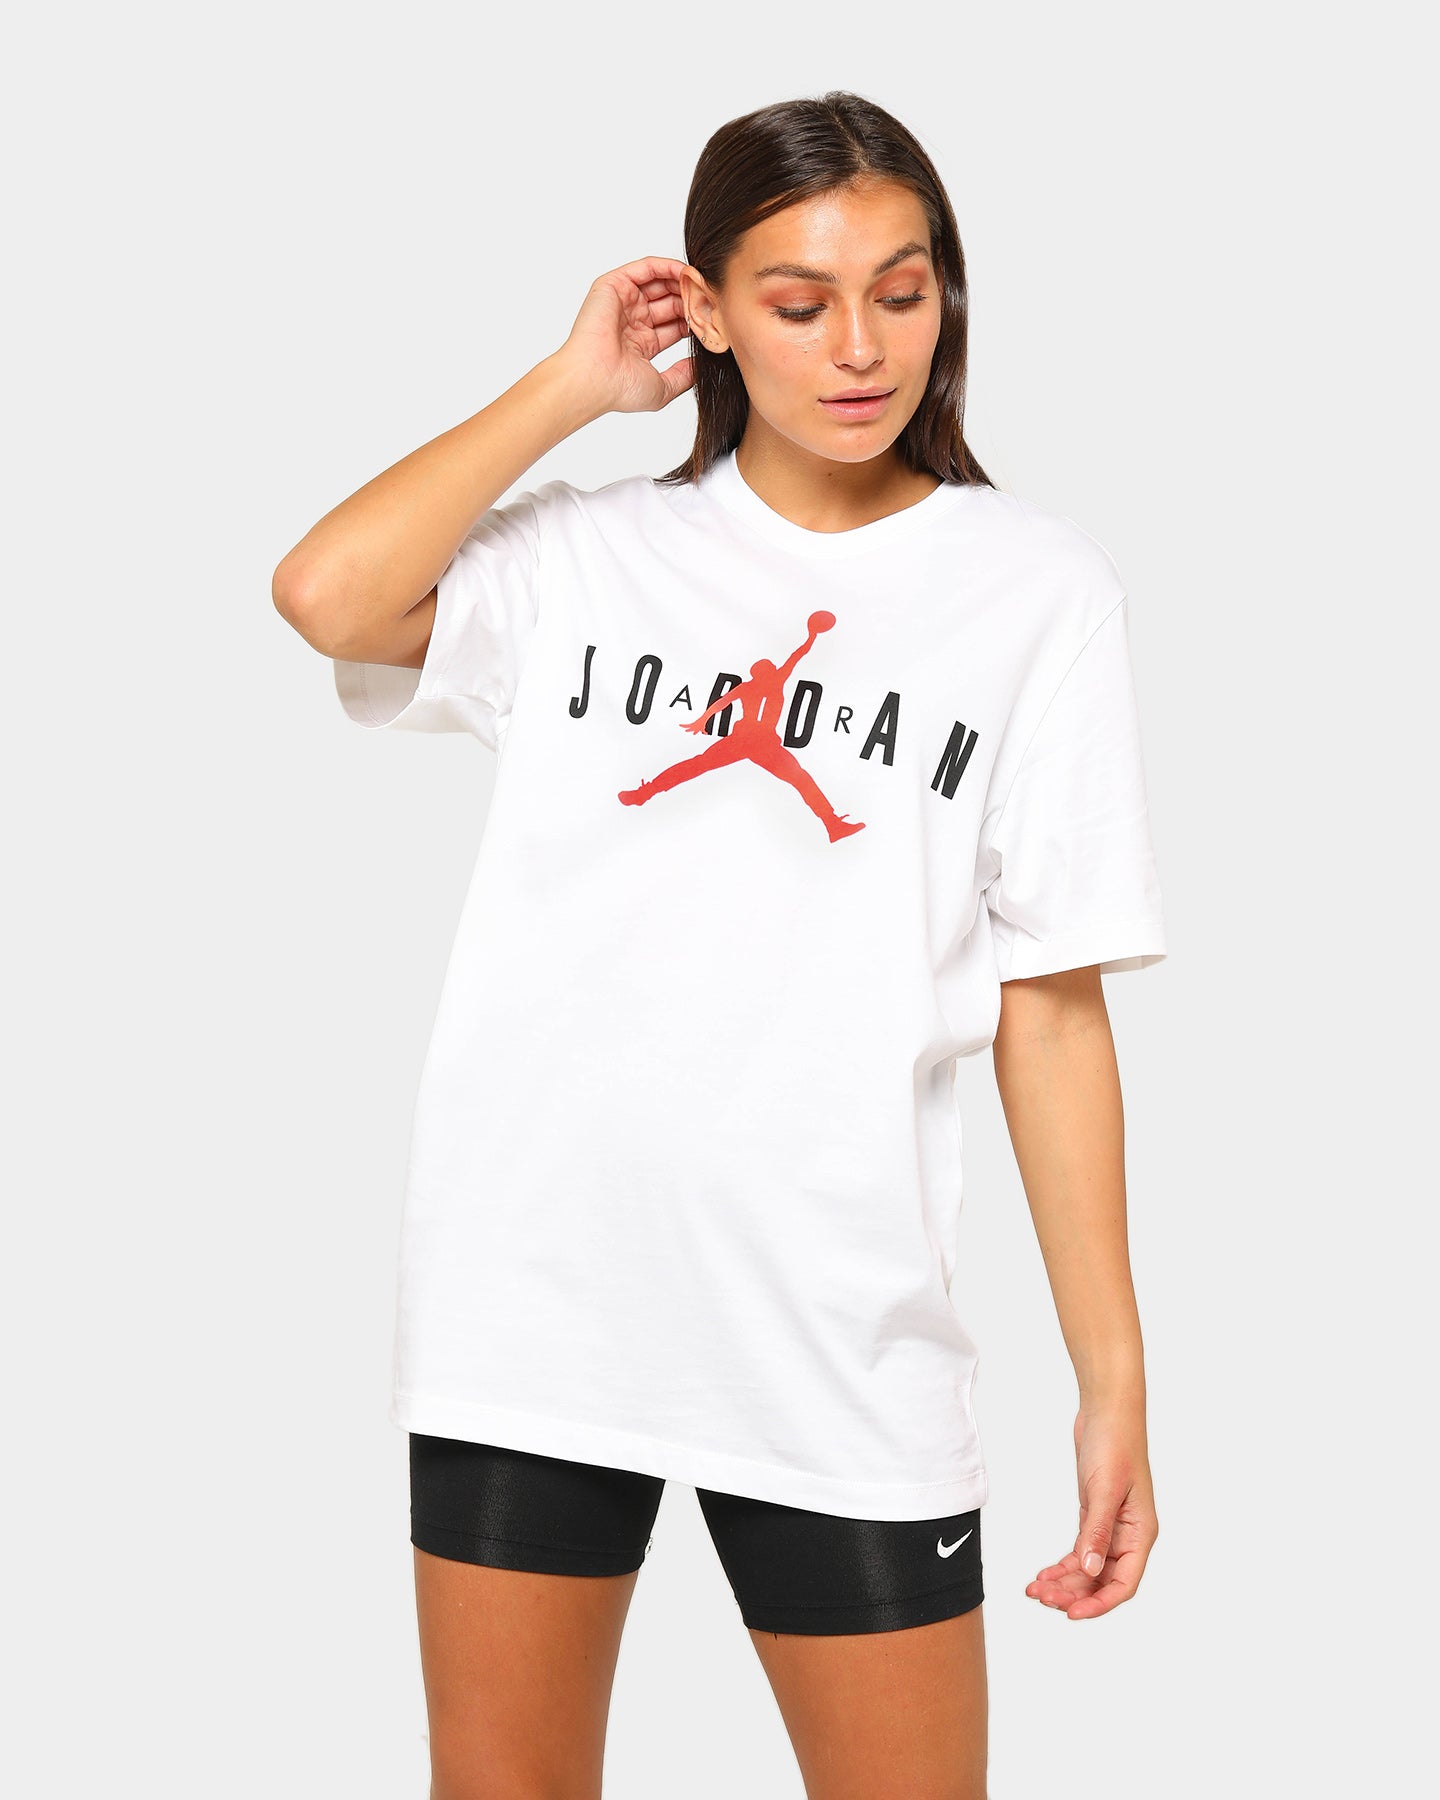 women jordan shirts